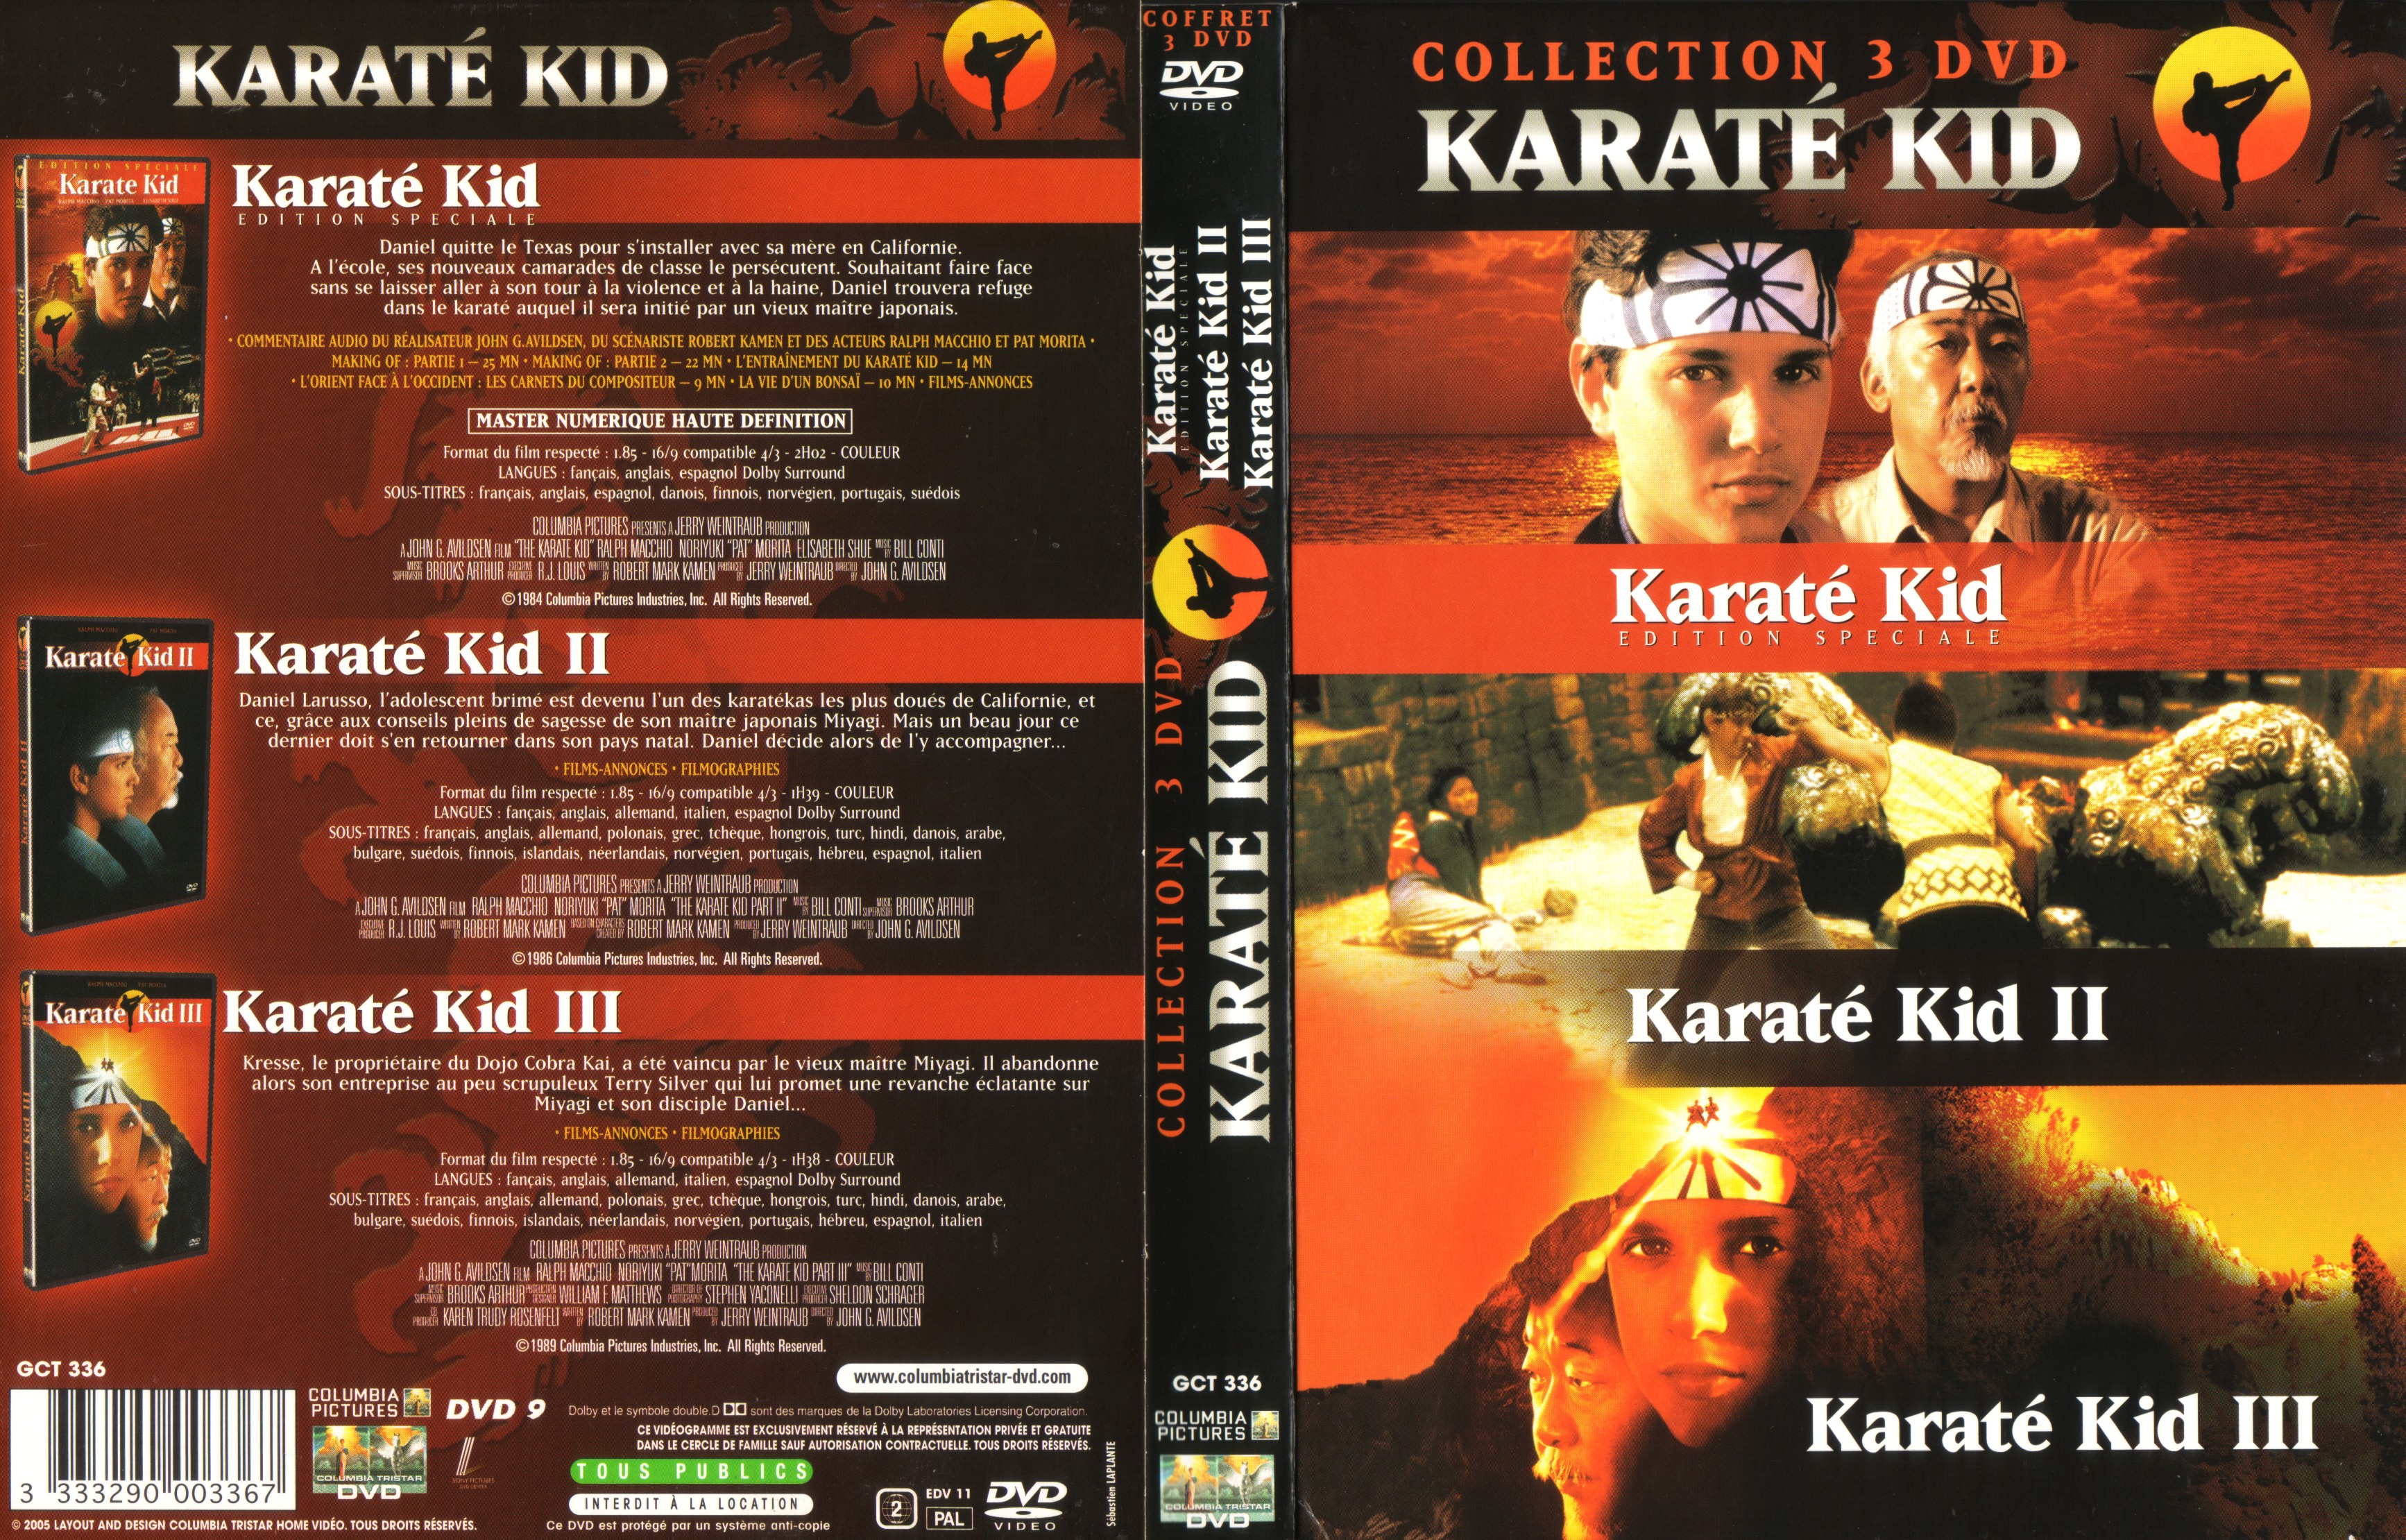 Jaquette DVD Karate Kid Trilogie COFFRET v2